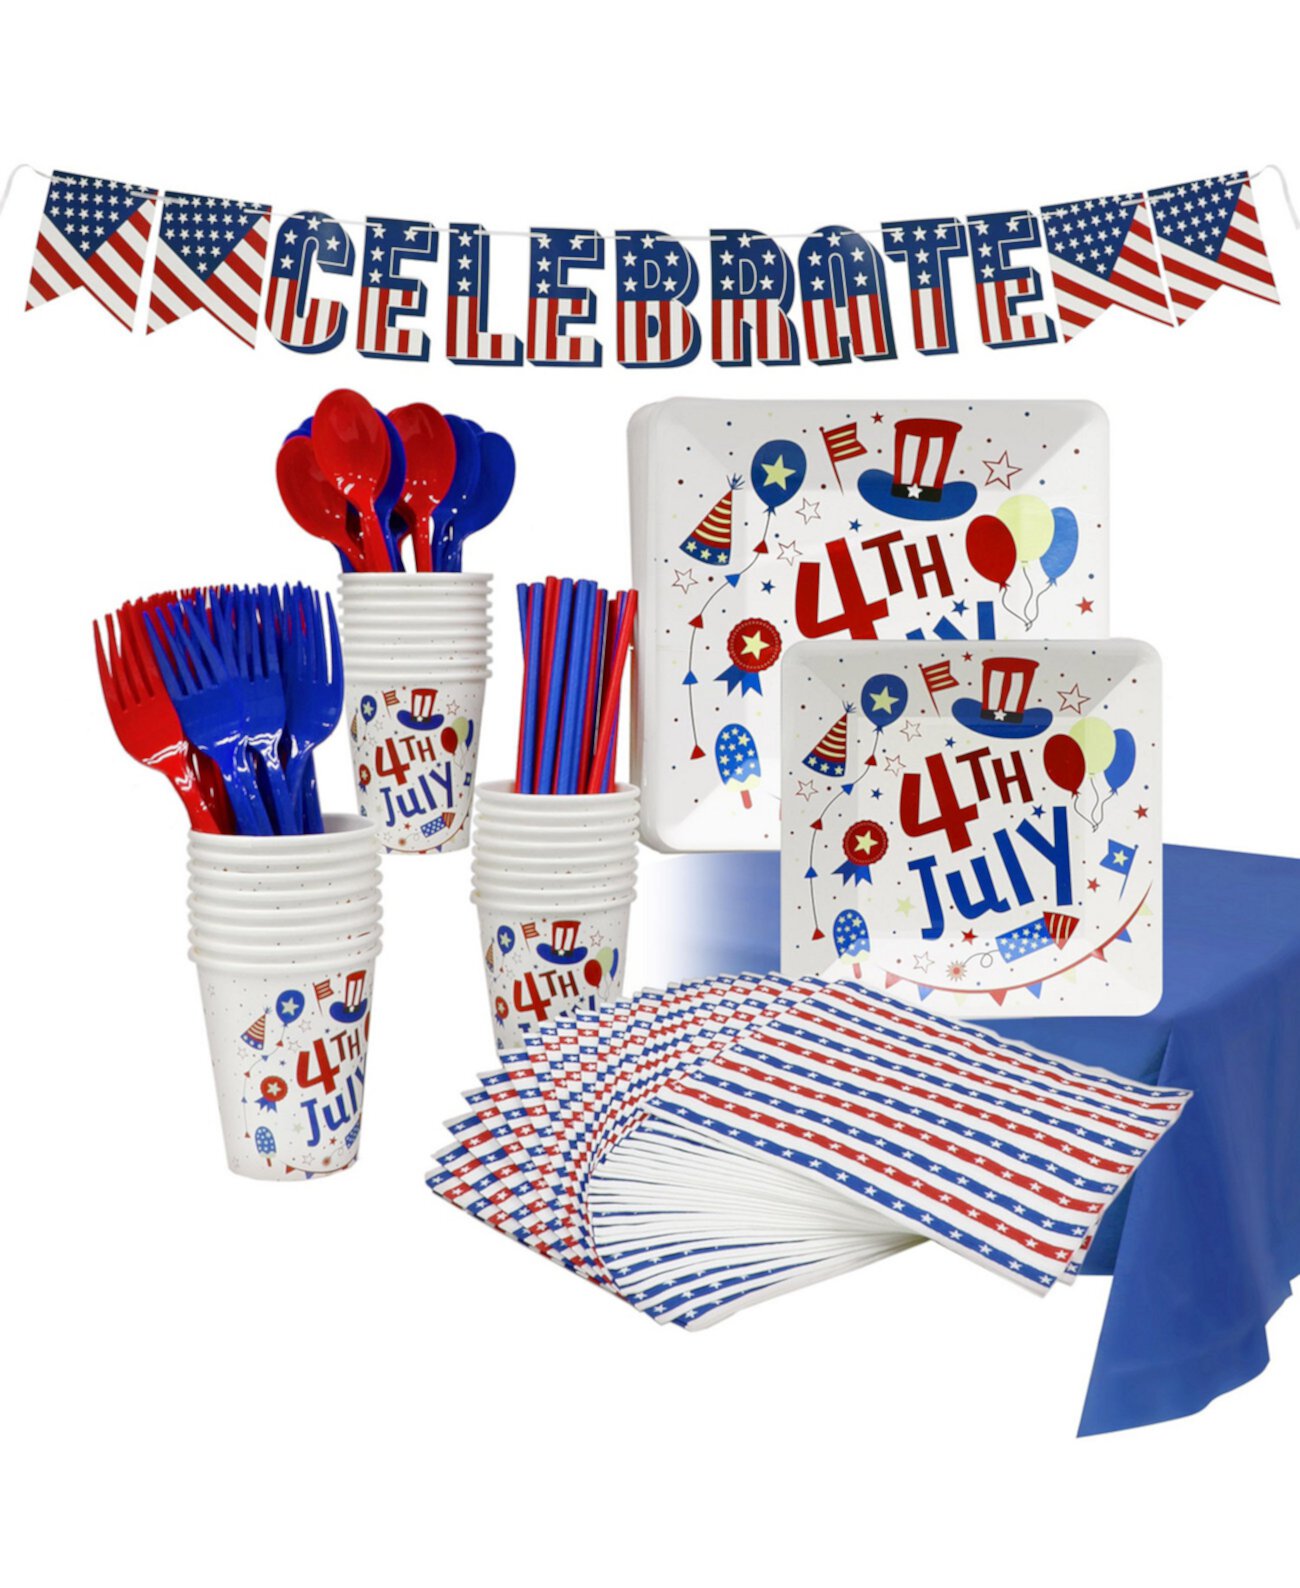 Одноразовый набор для вечеринки по случаю 4 июля, на 24 персоны, с большими и маленькими бумажными тарелками, бумажными стаканчиками, соломинками, салфетками, пластиковой посудой, скатертью и баннером. Puleo